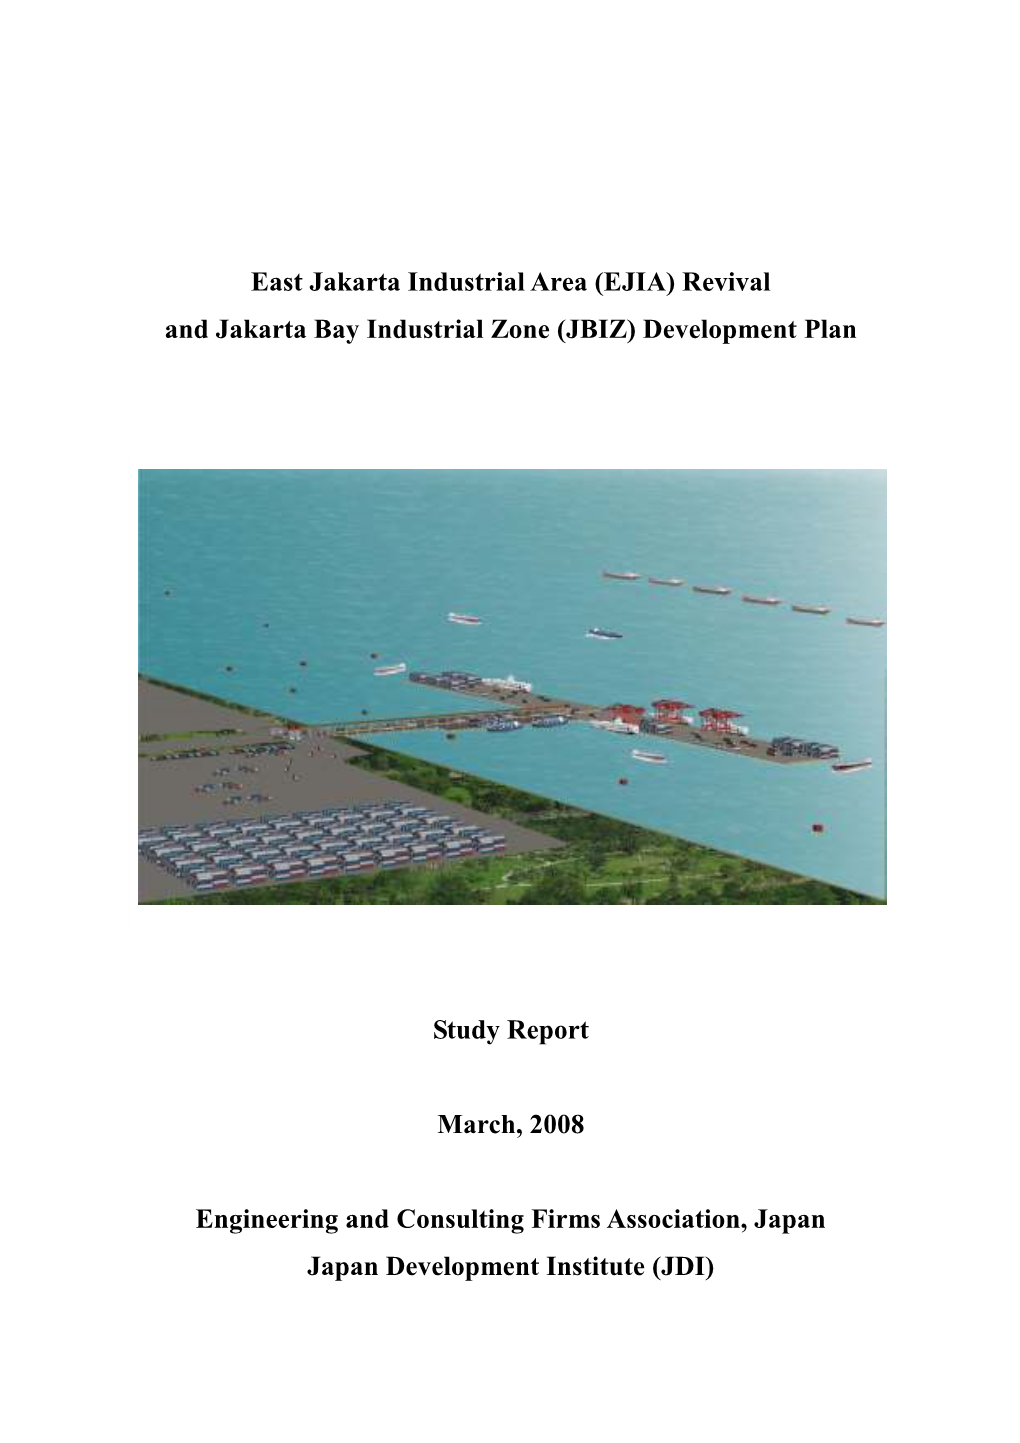 (EJIA) Revival and Jakarta Bay Industrial Zone (JBIZ) Development Plan